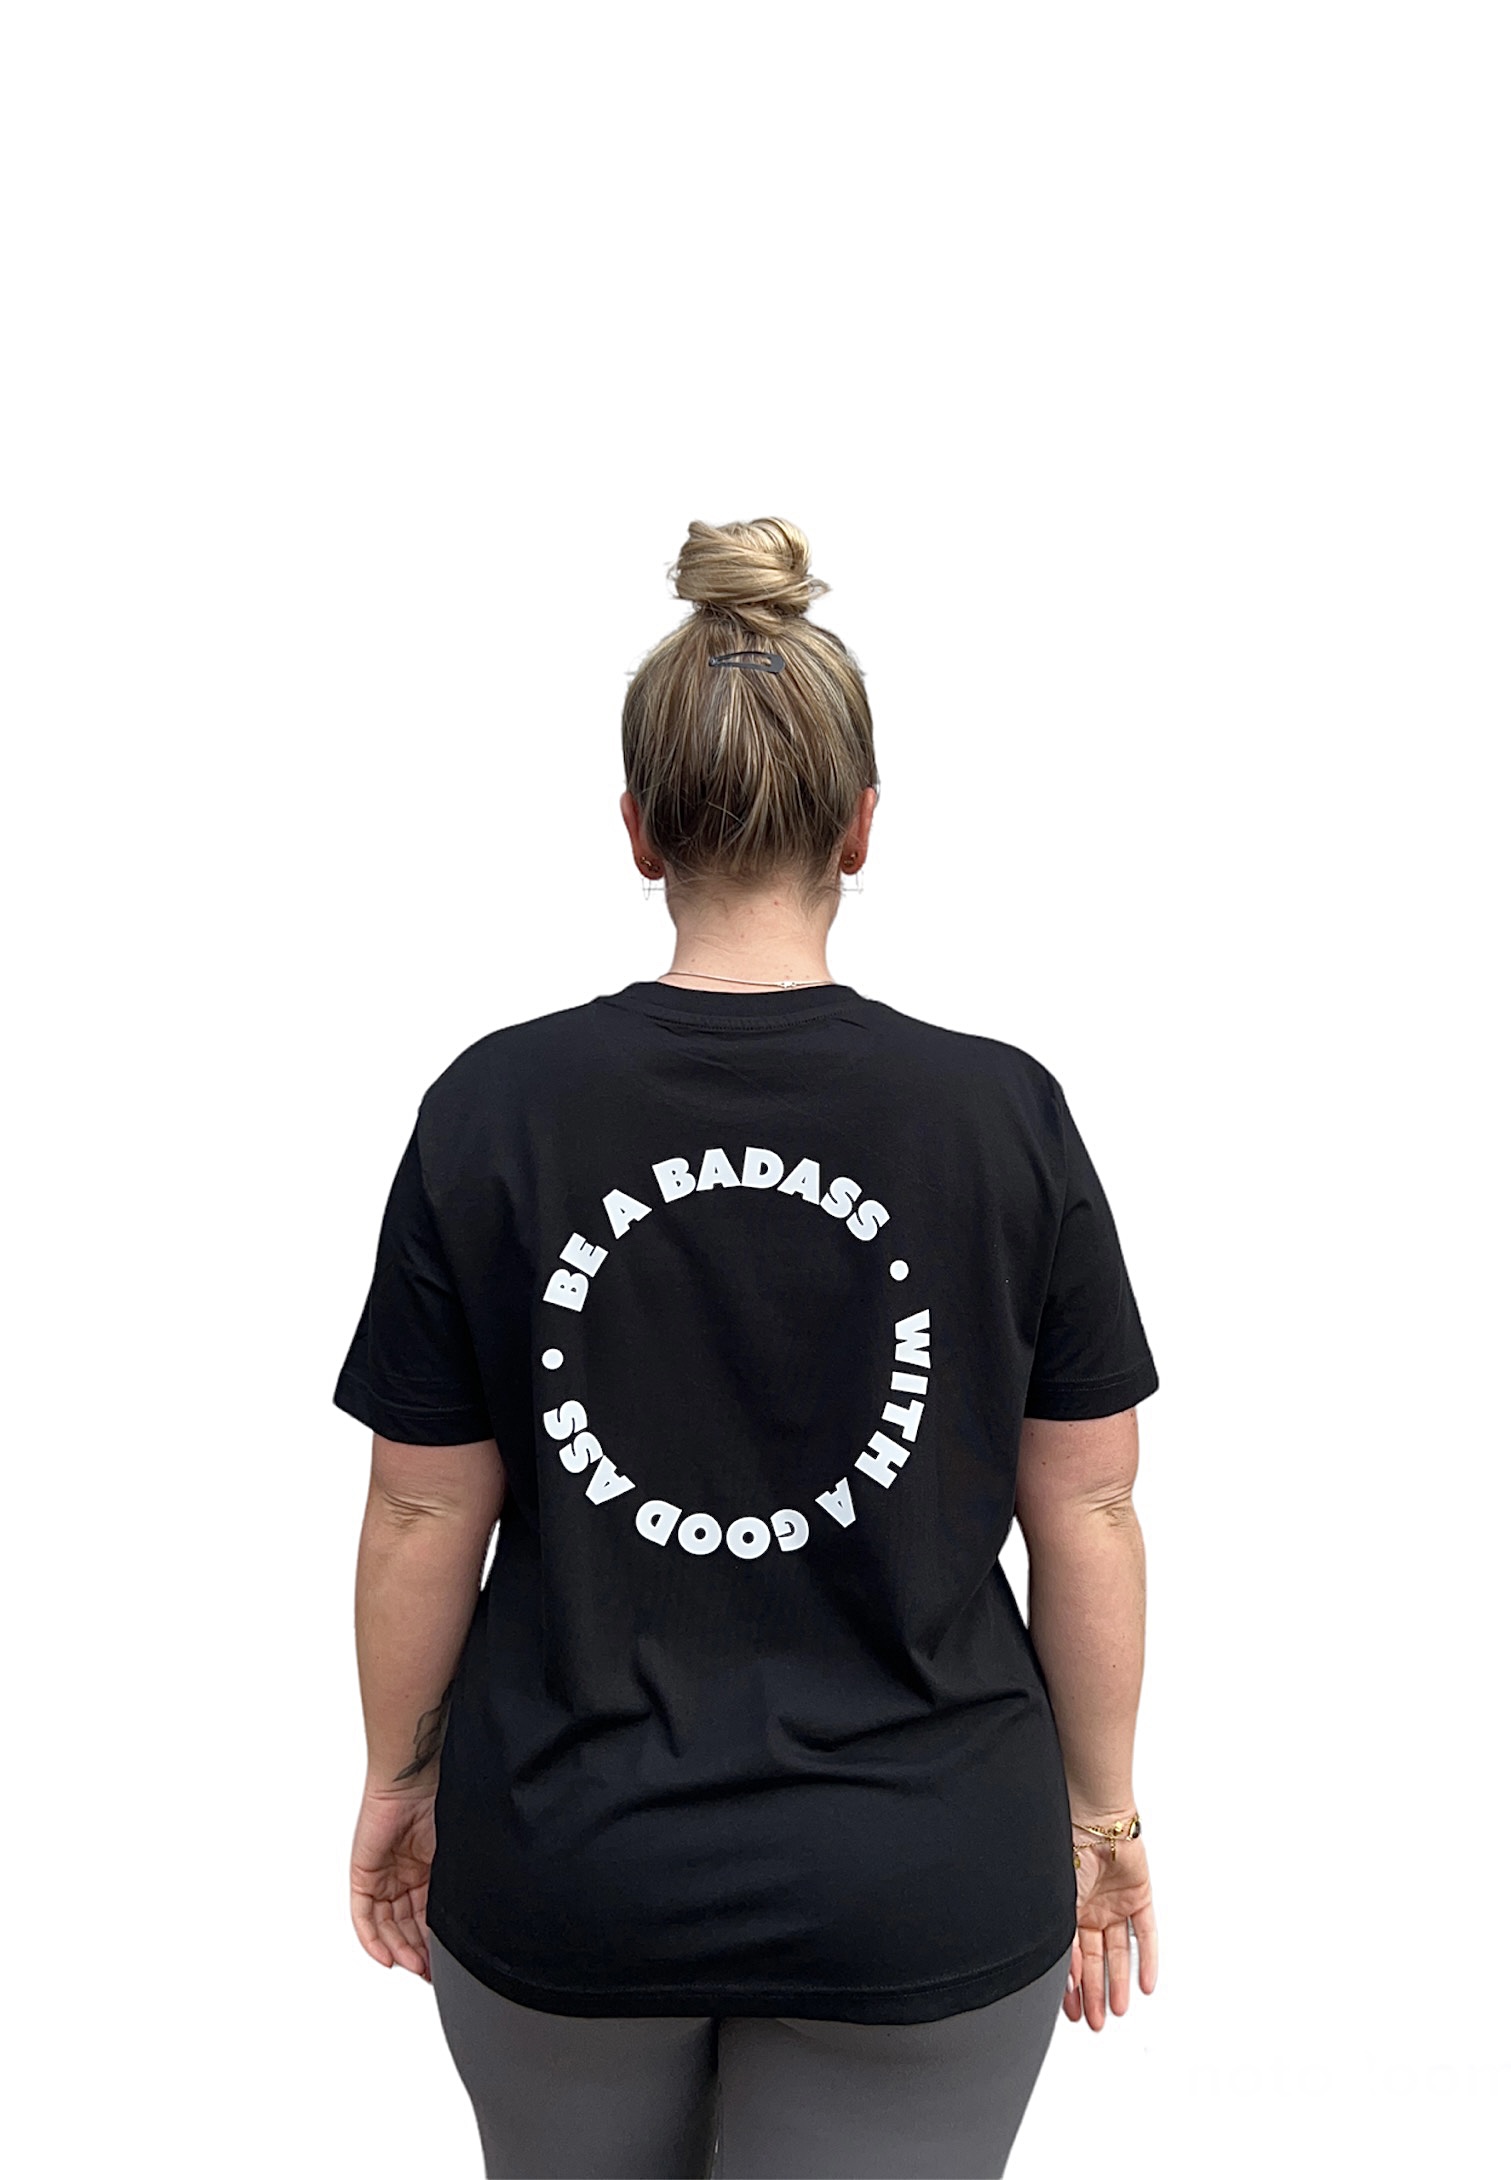 T-shirt: Be a badass with a good ass (XXL)